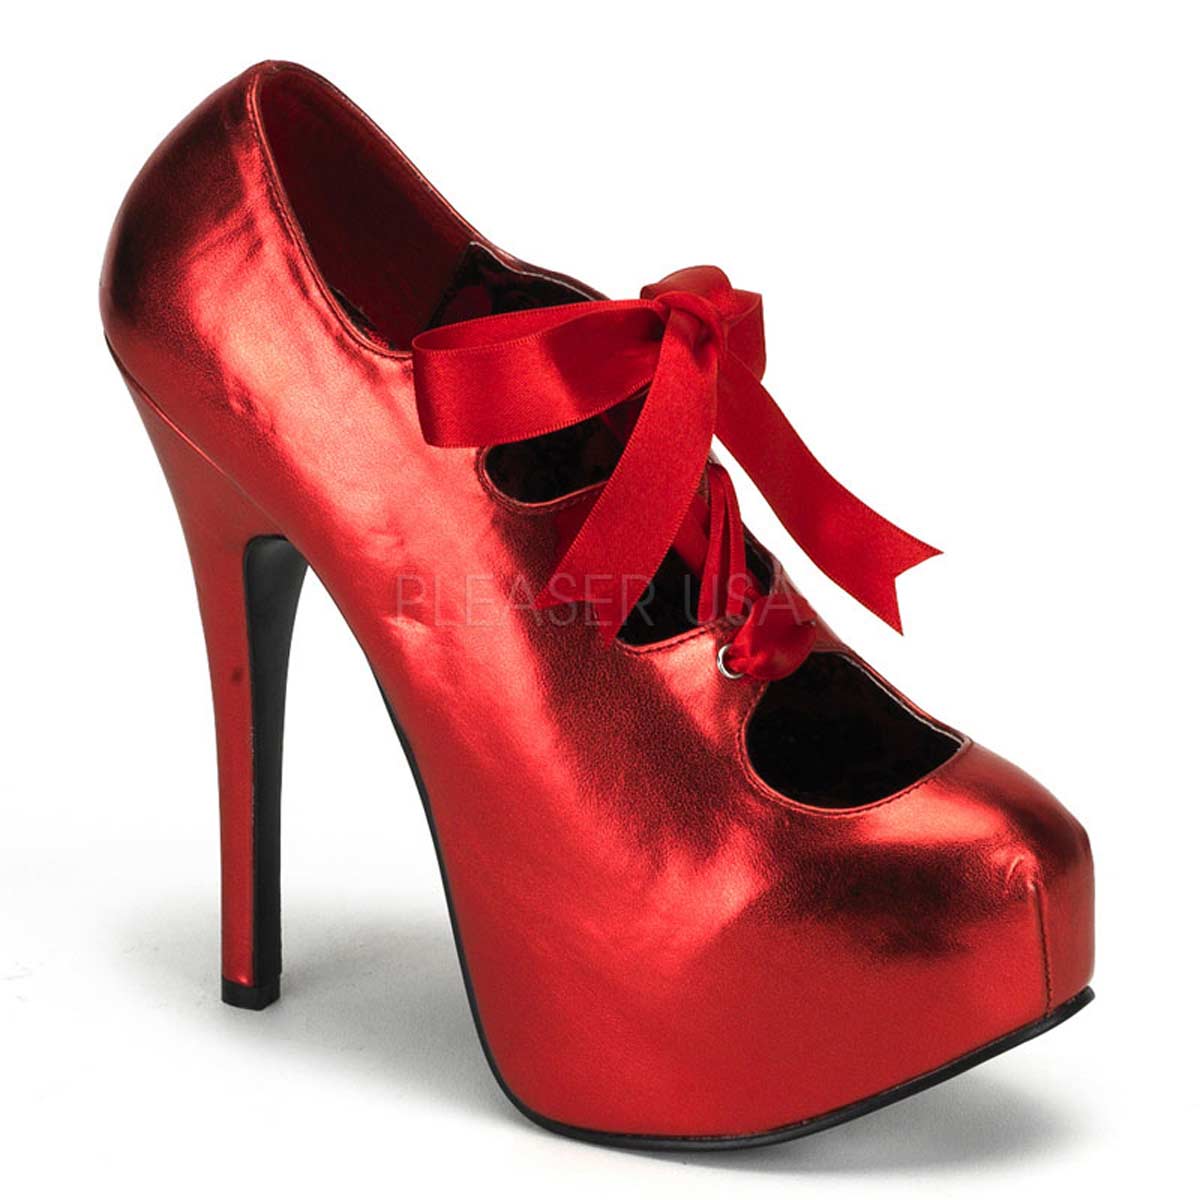 S q обувь. Pleaser Bordello обувь. Красные туфли. Красные туфли на каблуке. Красные ботинки.